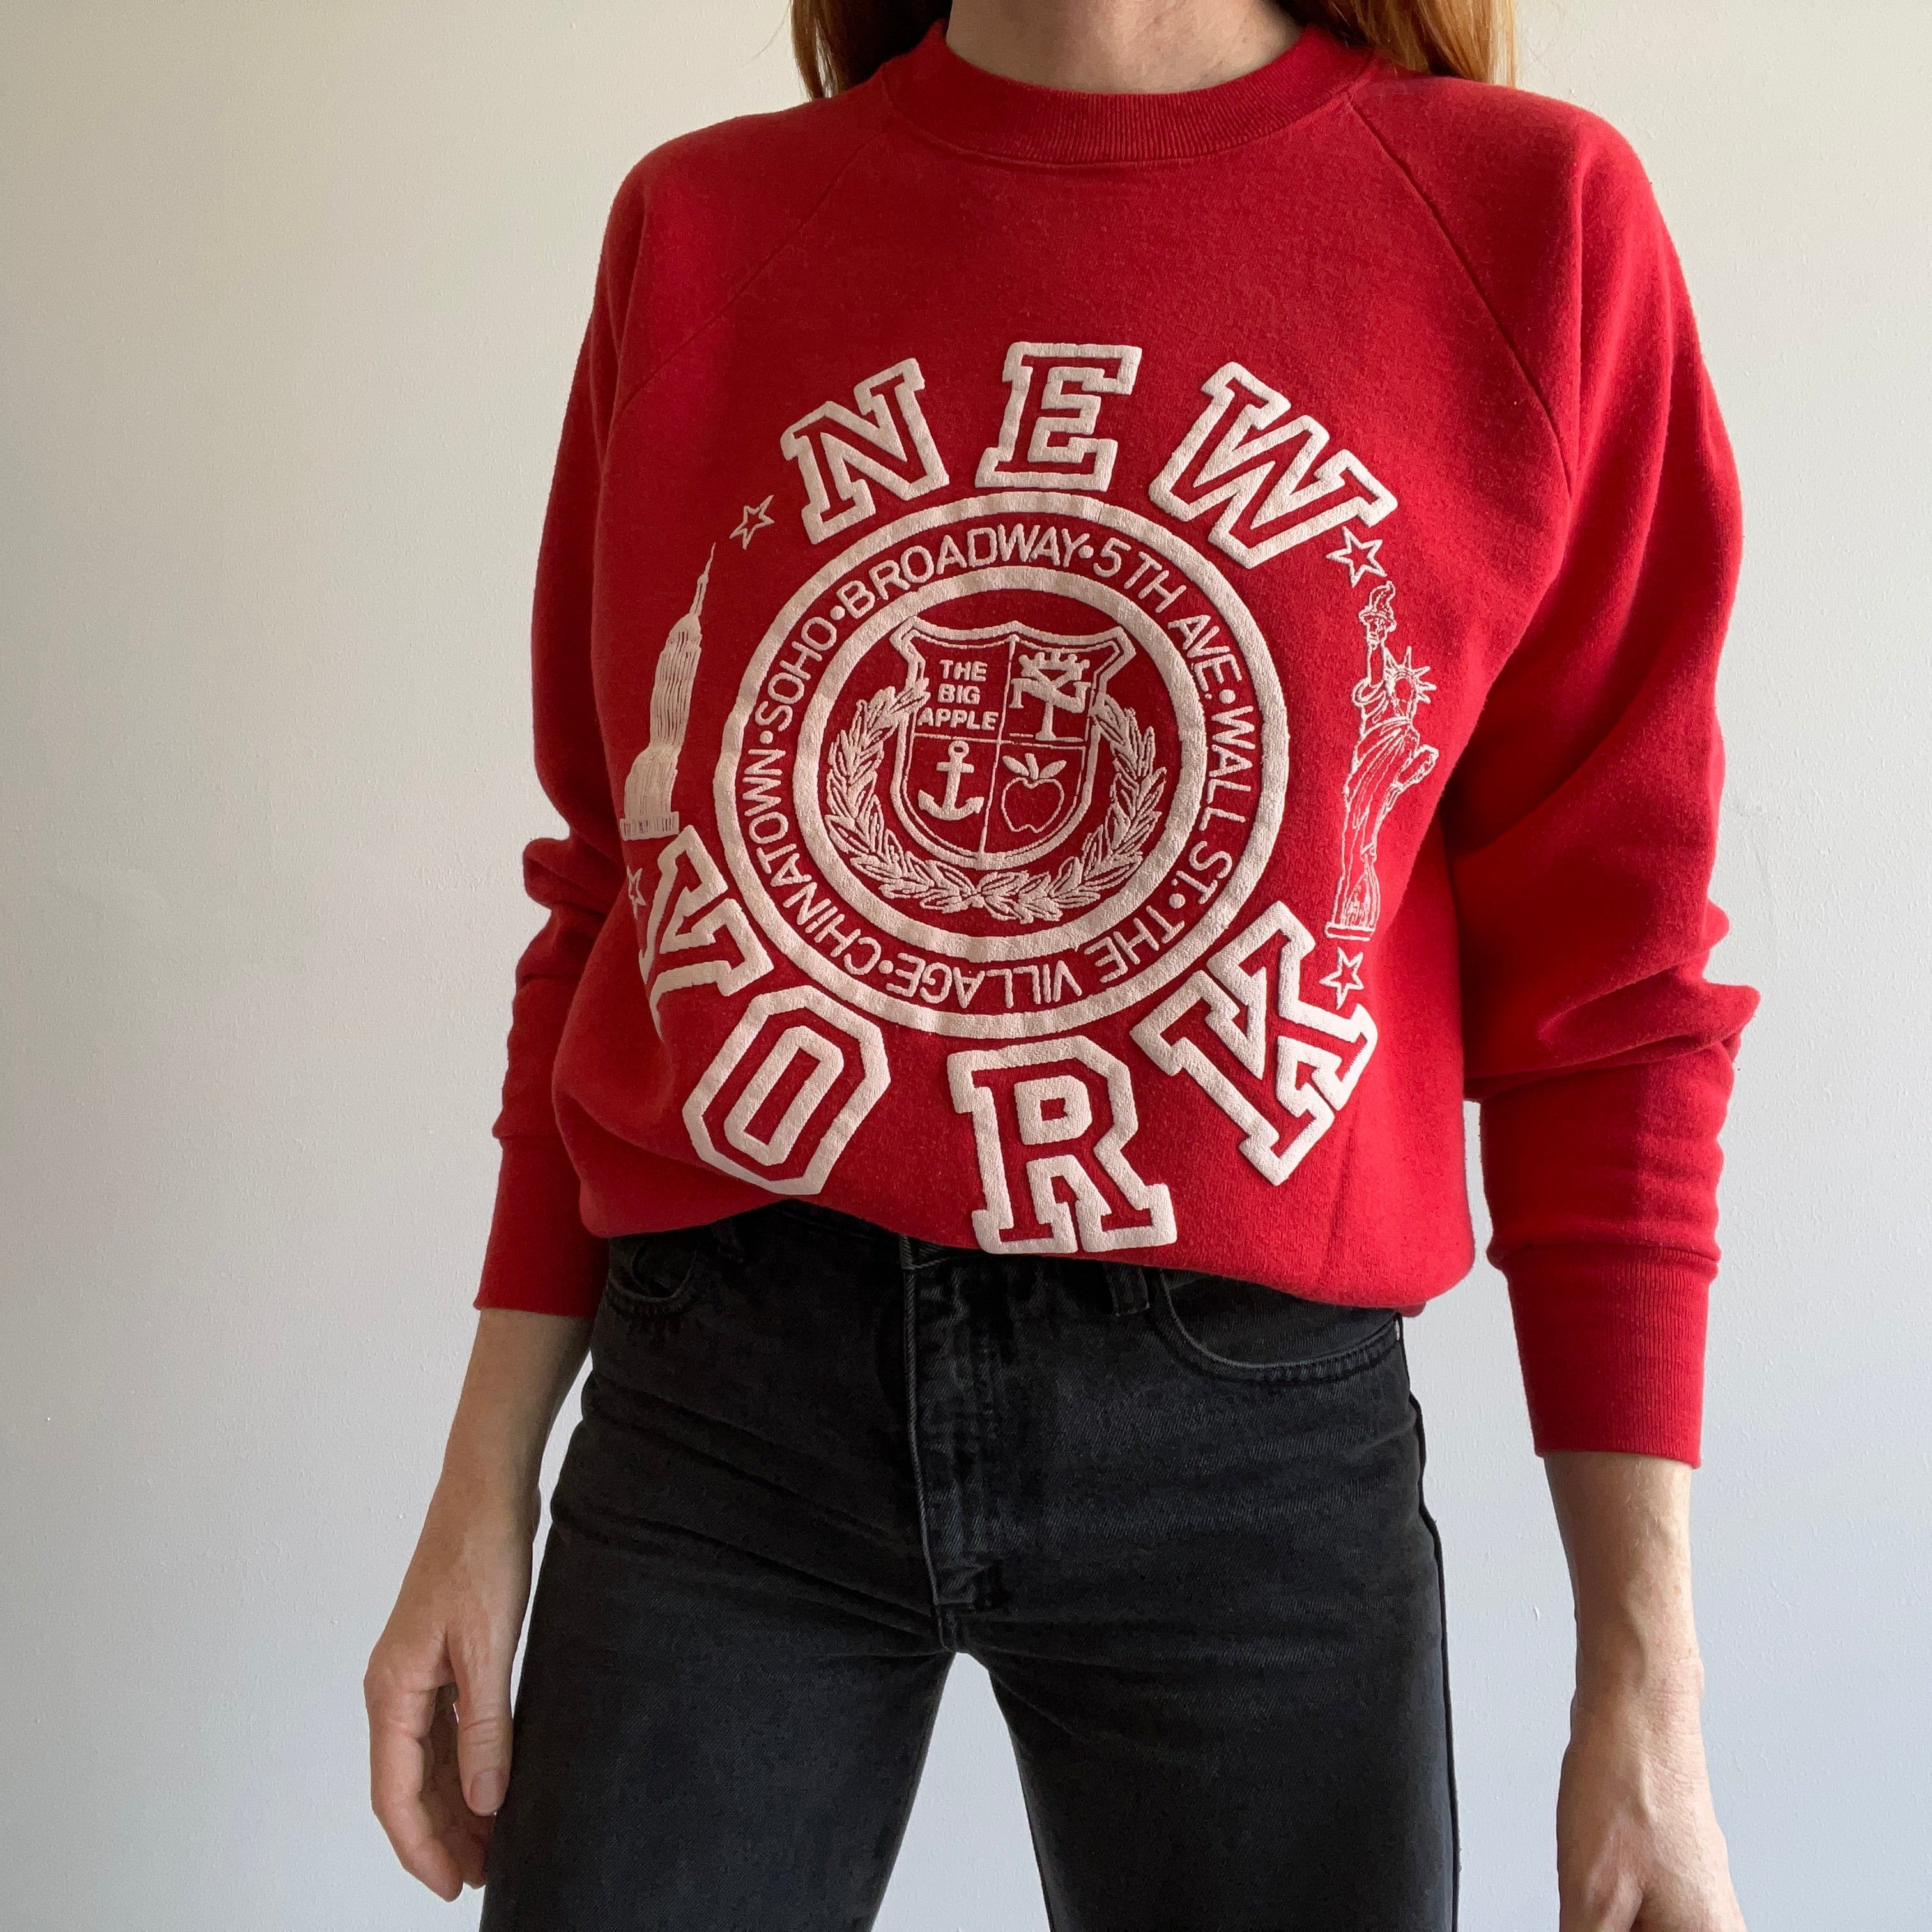 1980s New York Sweatshirt - OMFG!!!